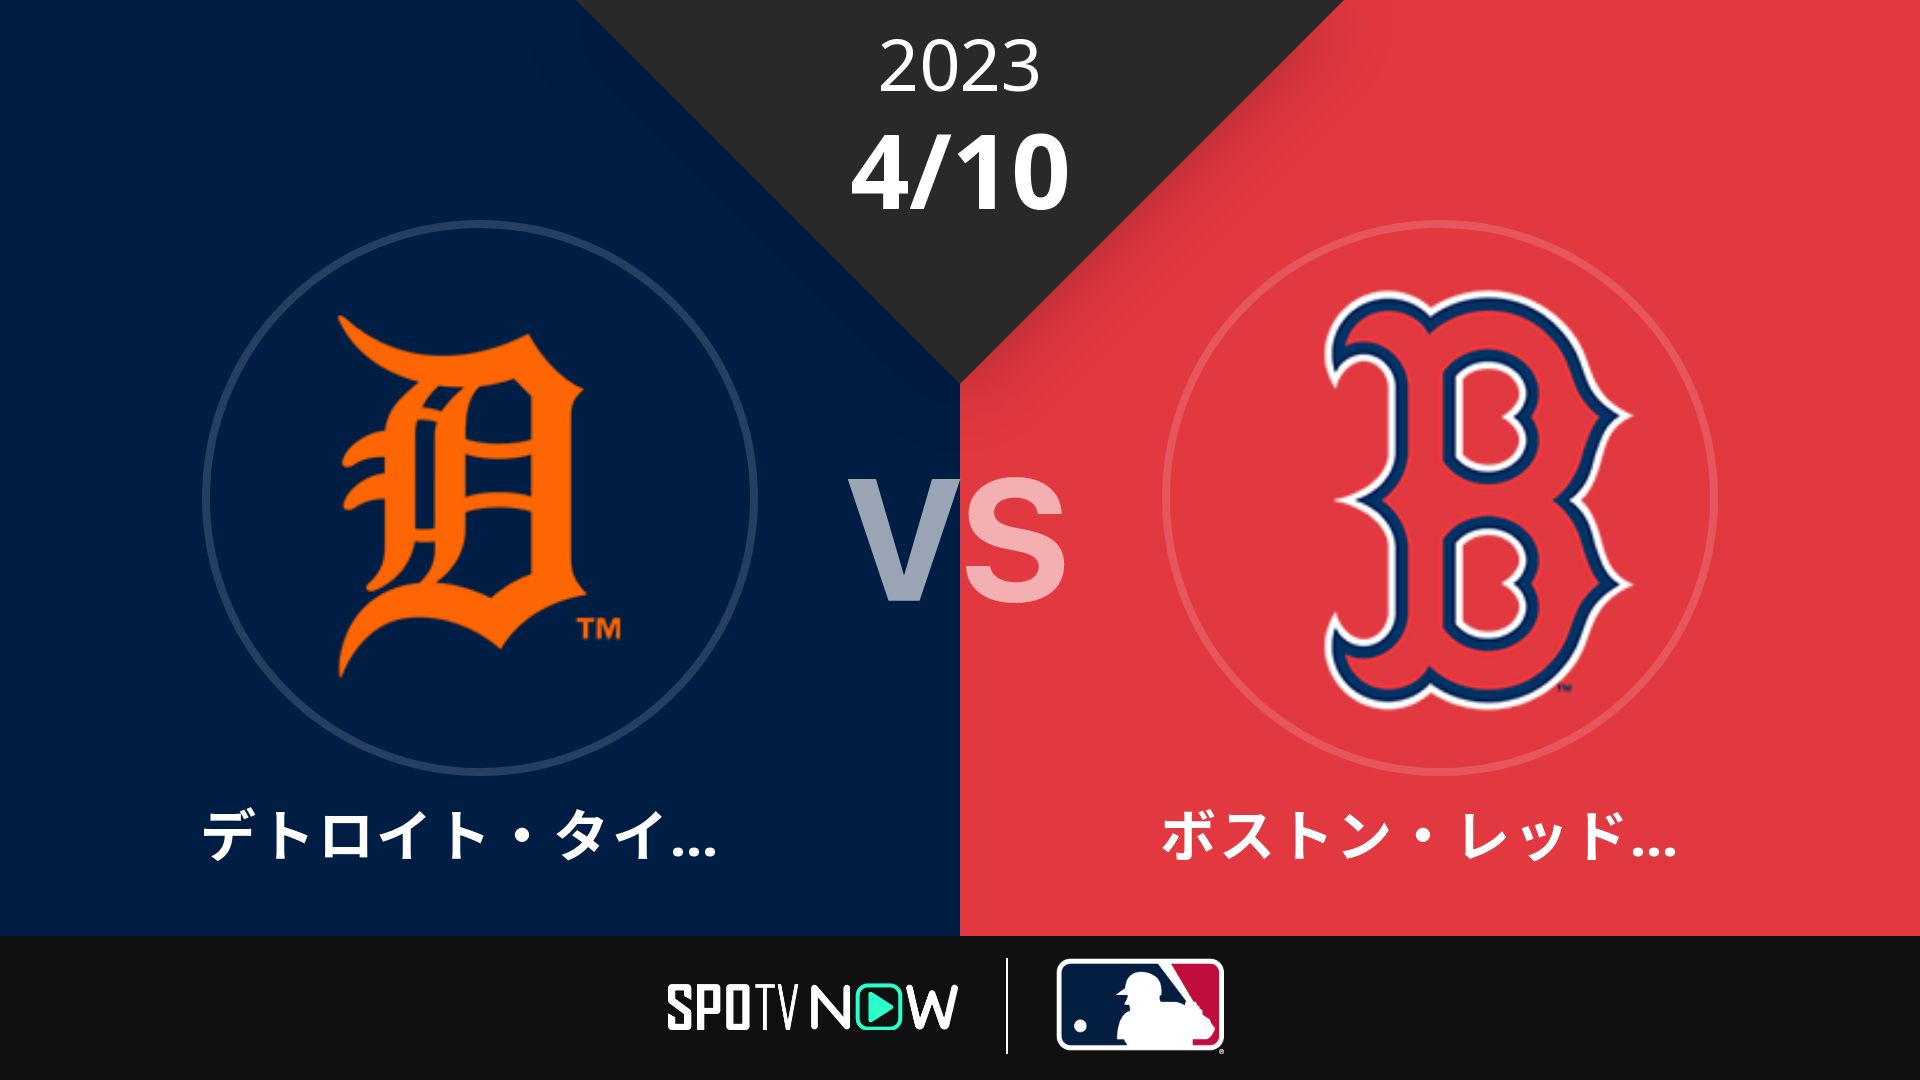 2023/4/10 タイガース vs Rソックス [MLB]